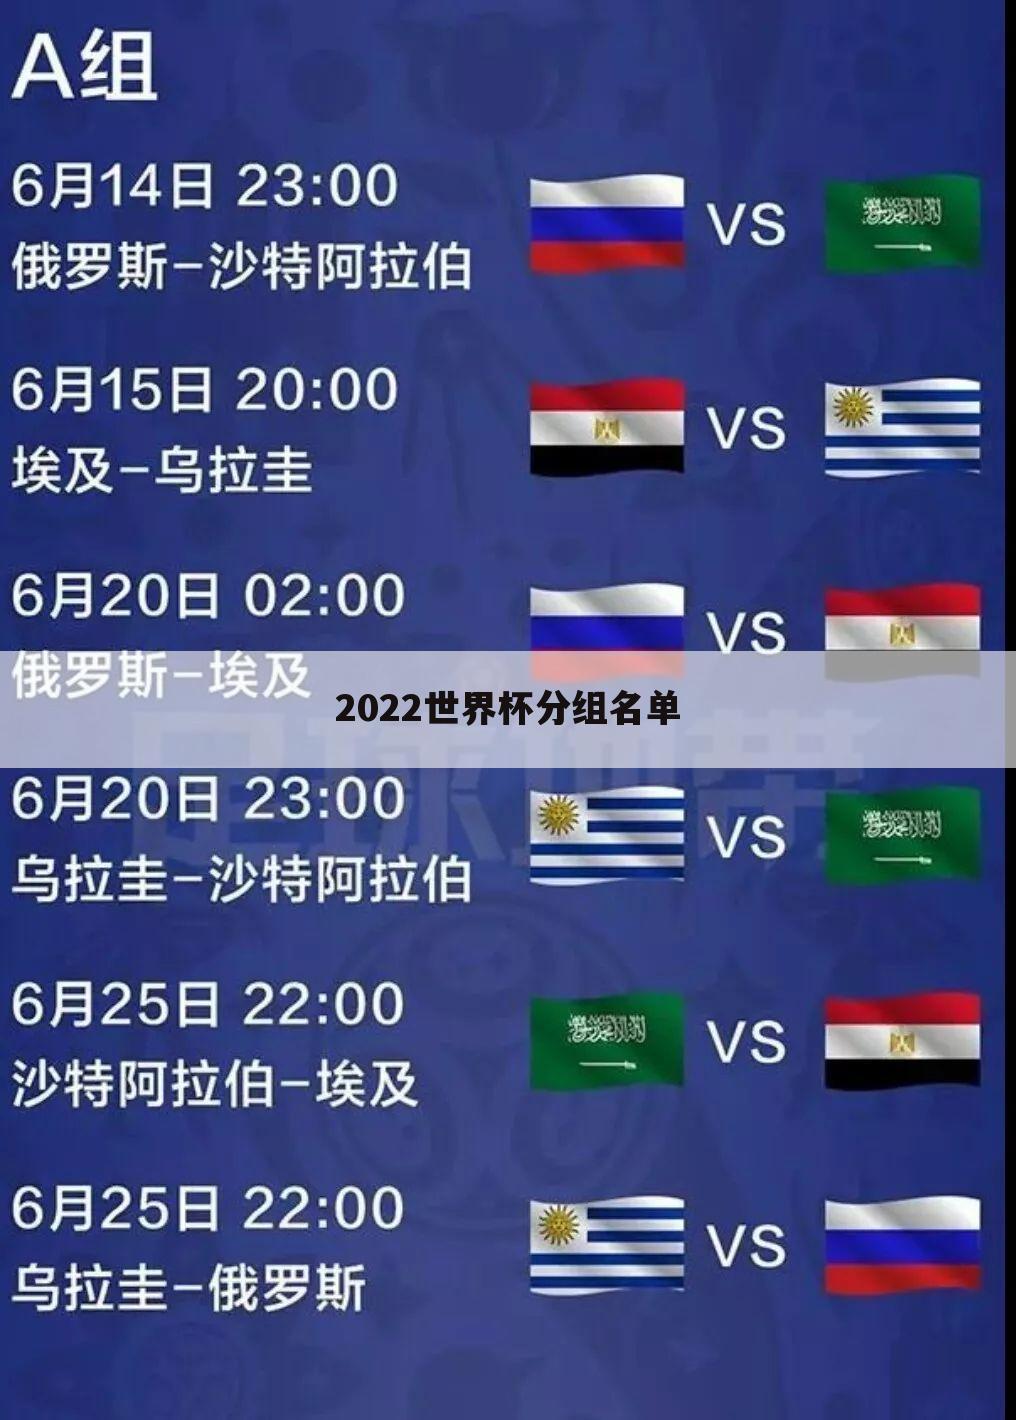 2022世界杯分组名单